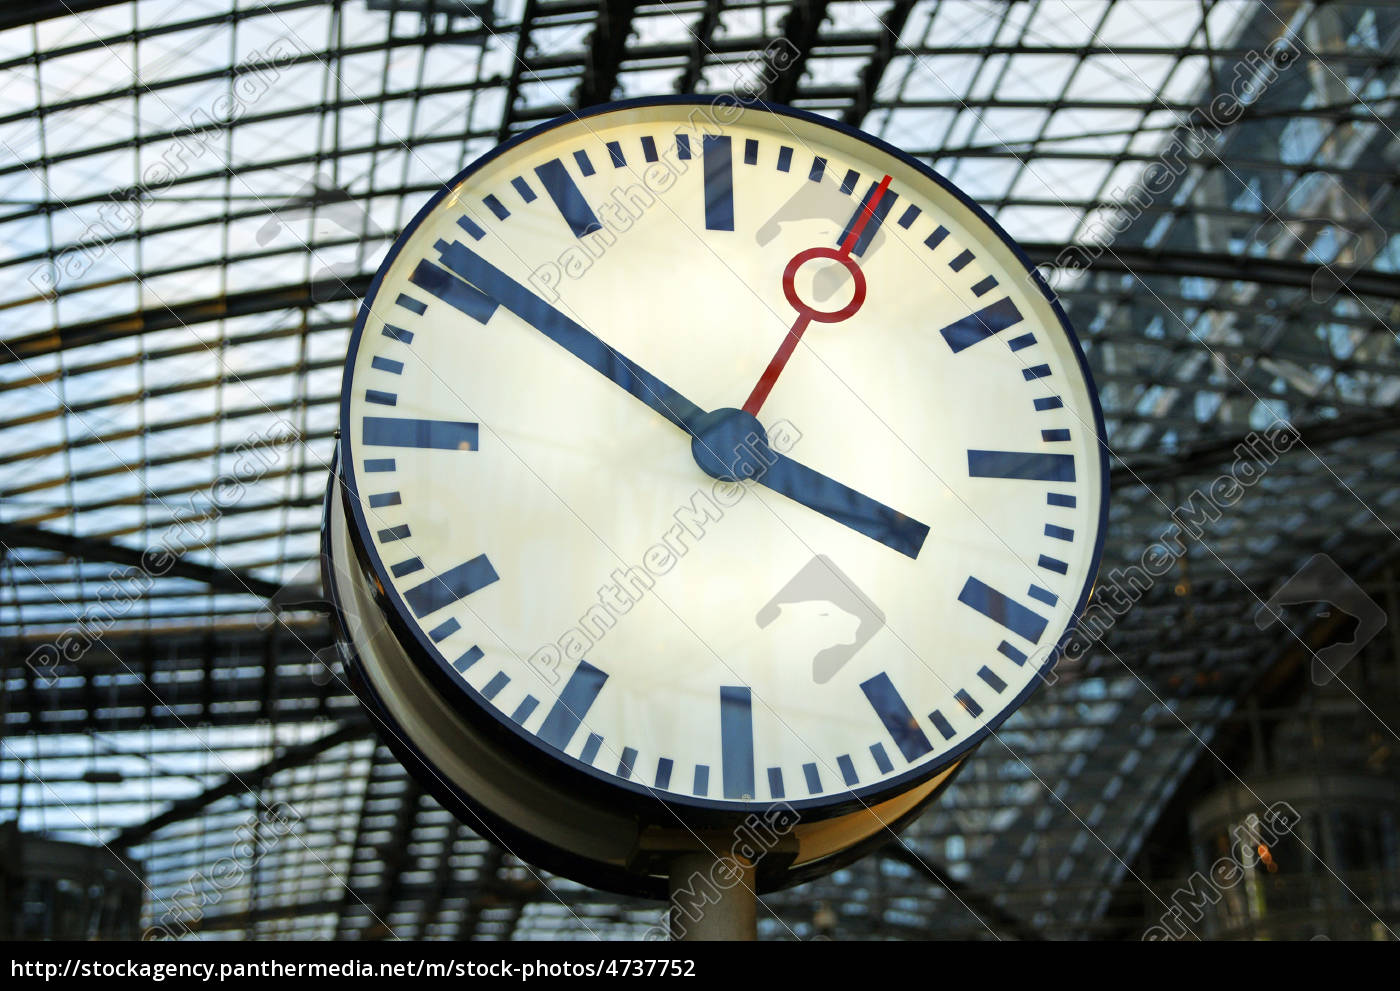 Stazione orologio - stazione ferroviaria orologio - Stockphoto #4737752